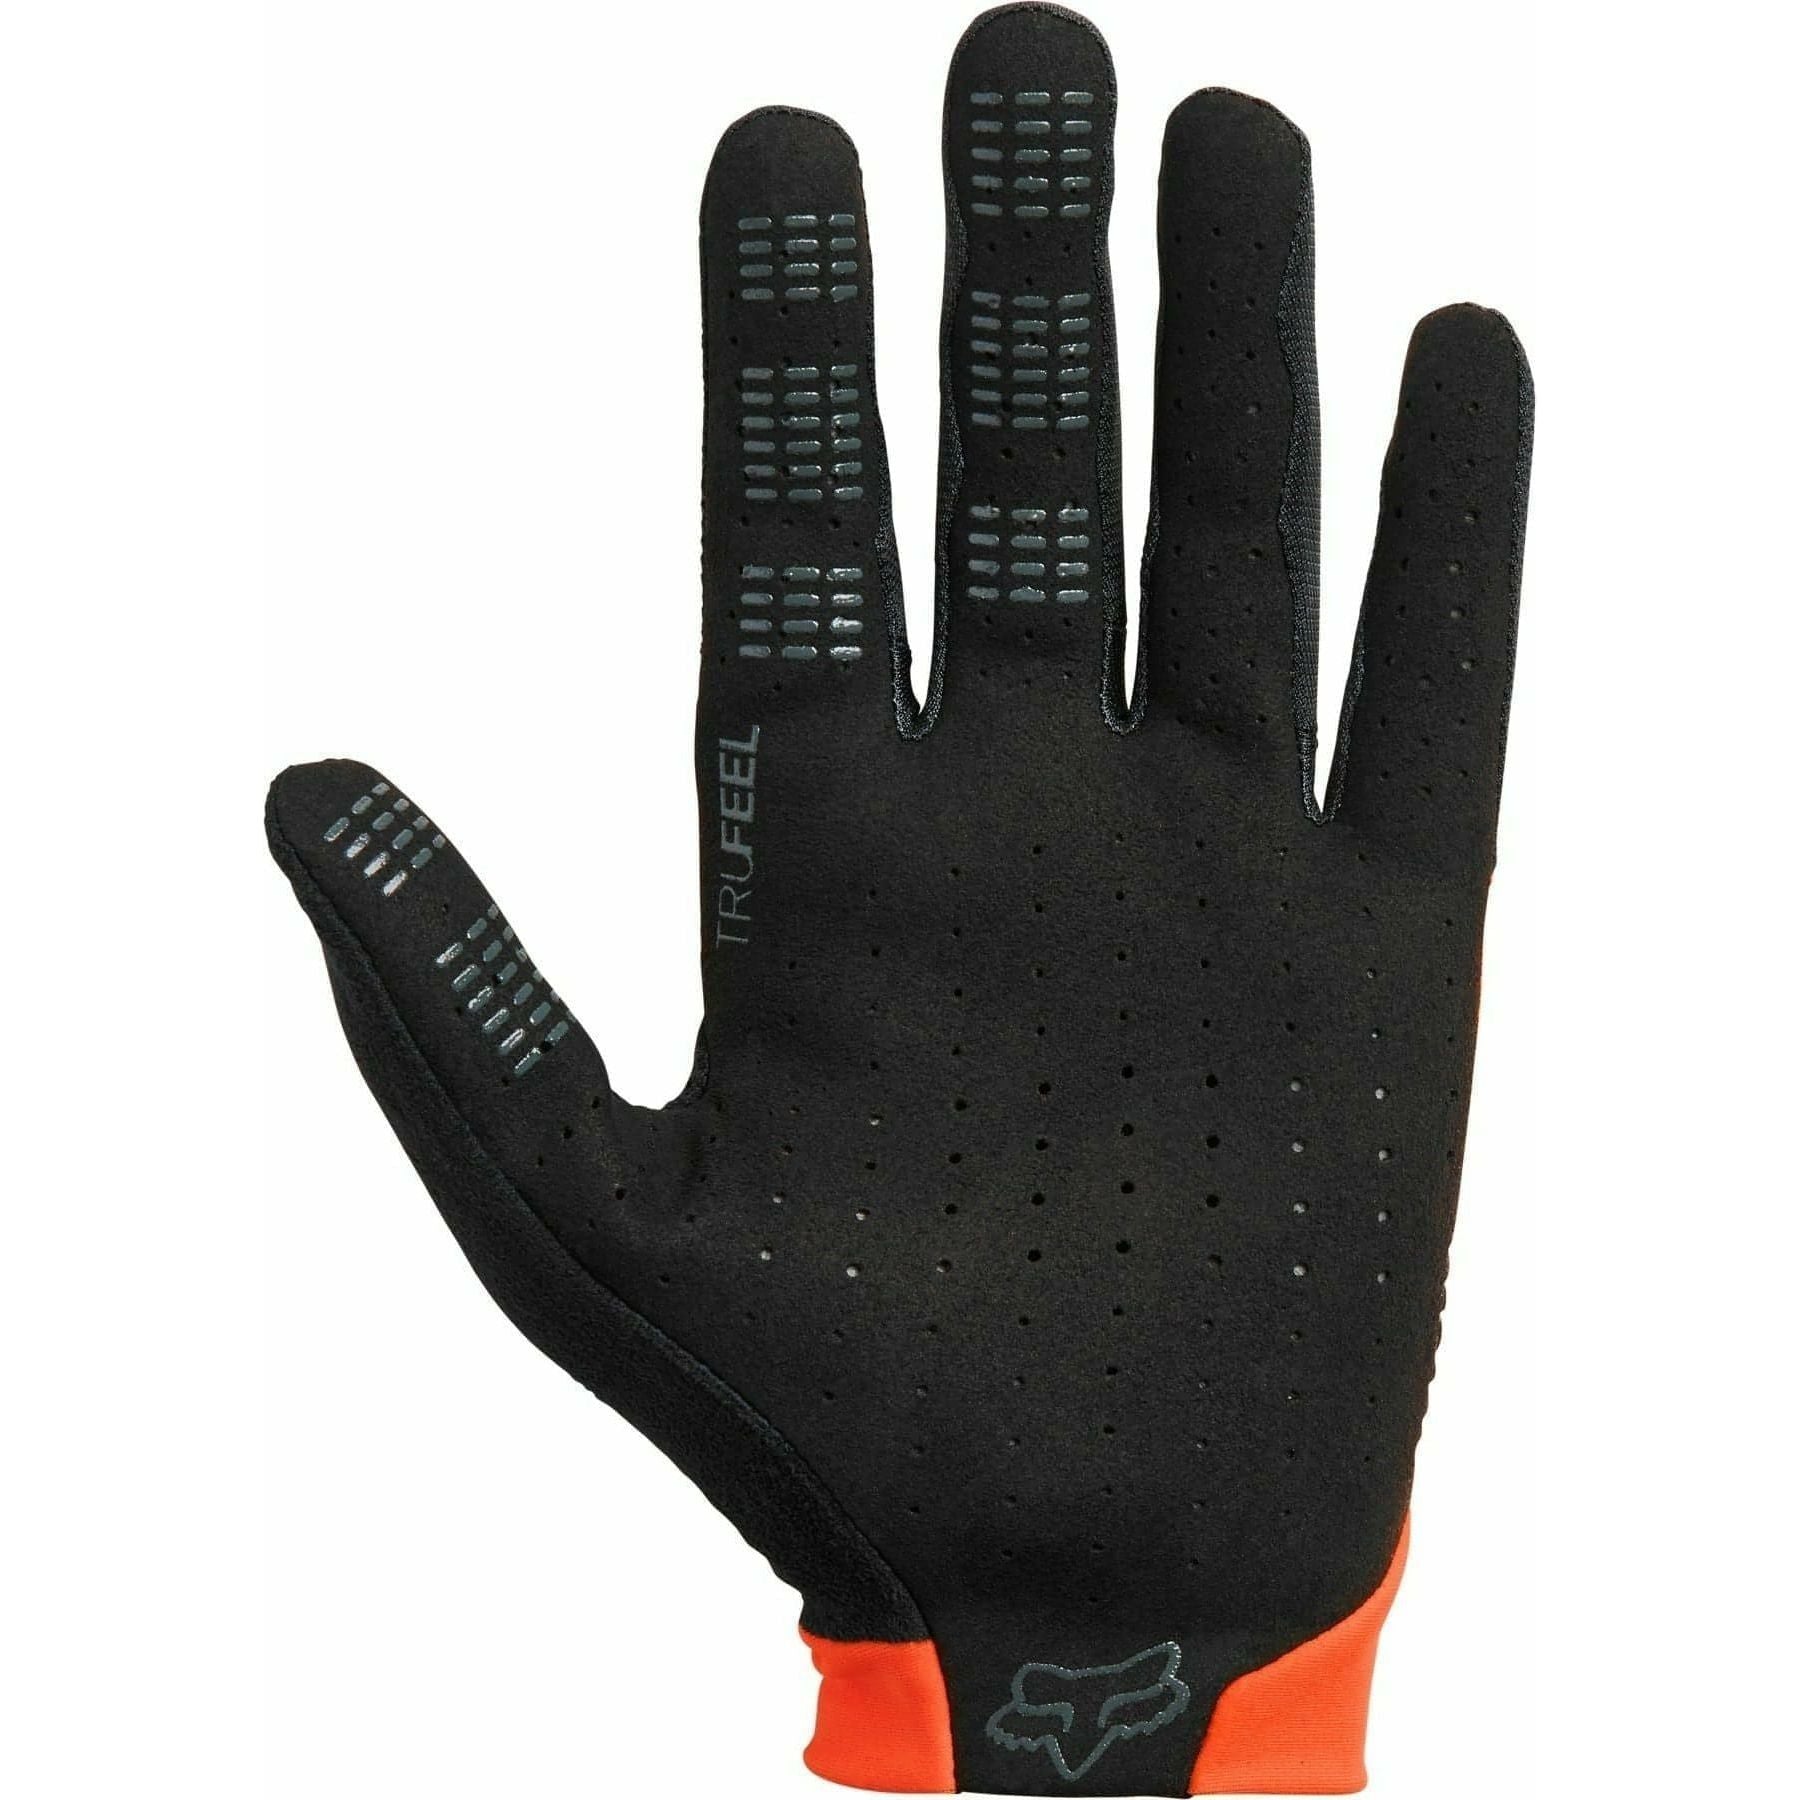 Fox Flexair Full Finger Cycling Gloves - Orange - Start Fitness